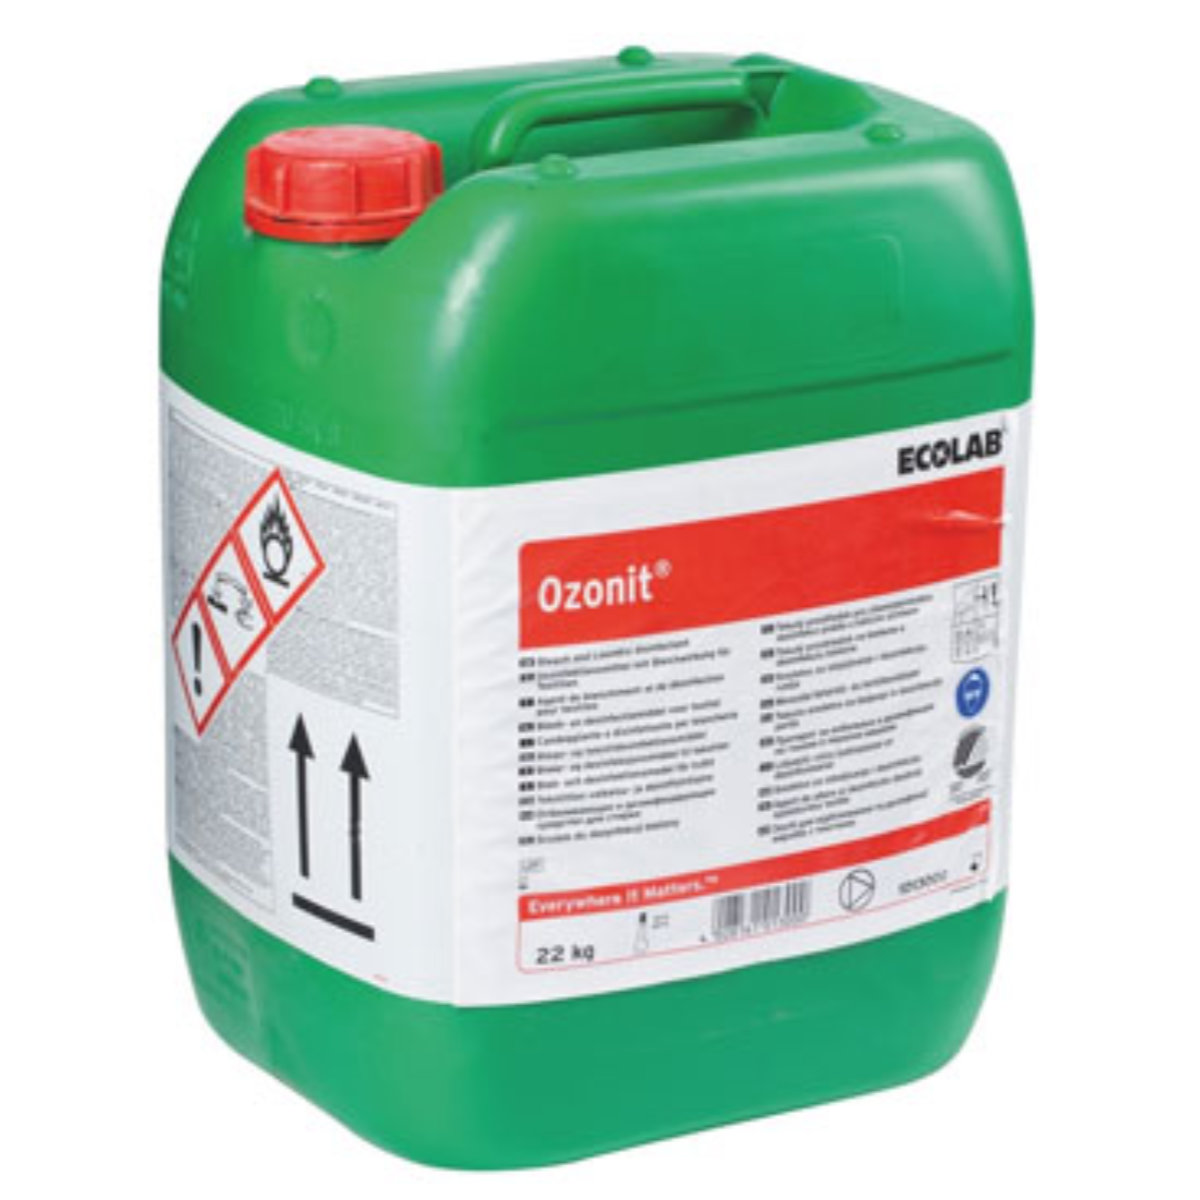 Agent liquide neutralisant (blanchiment) de textile et désinfectant des dispositifs médicaux - Ozonit_0